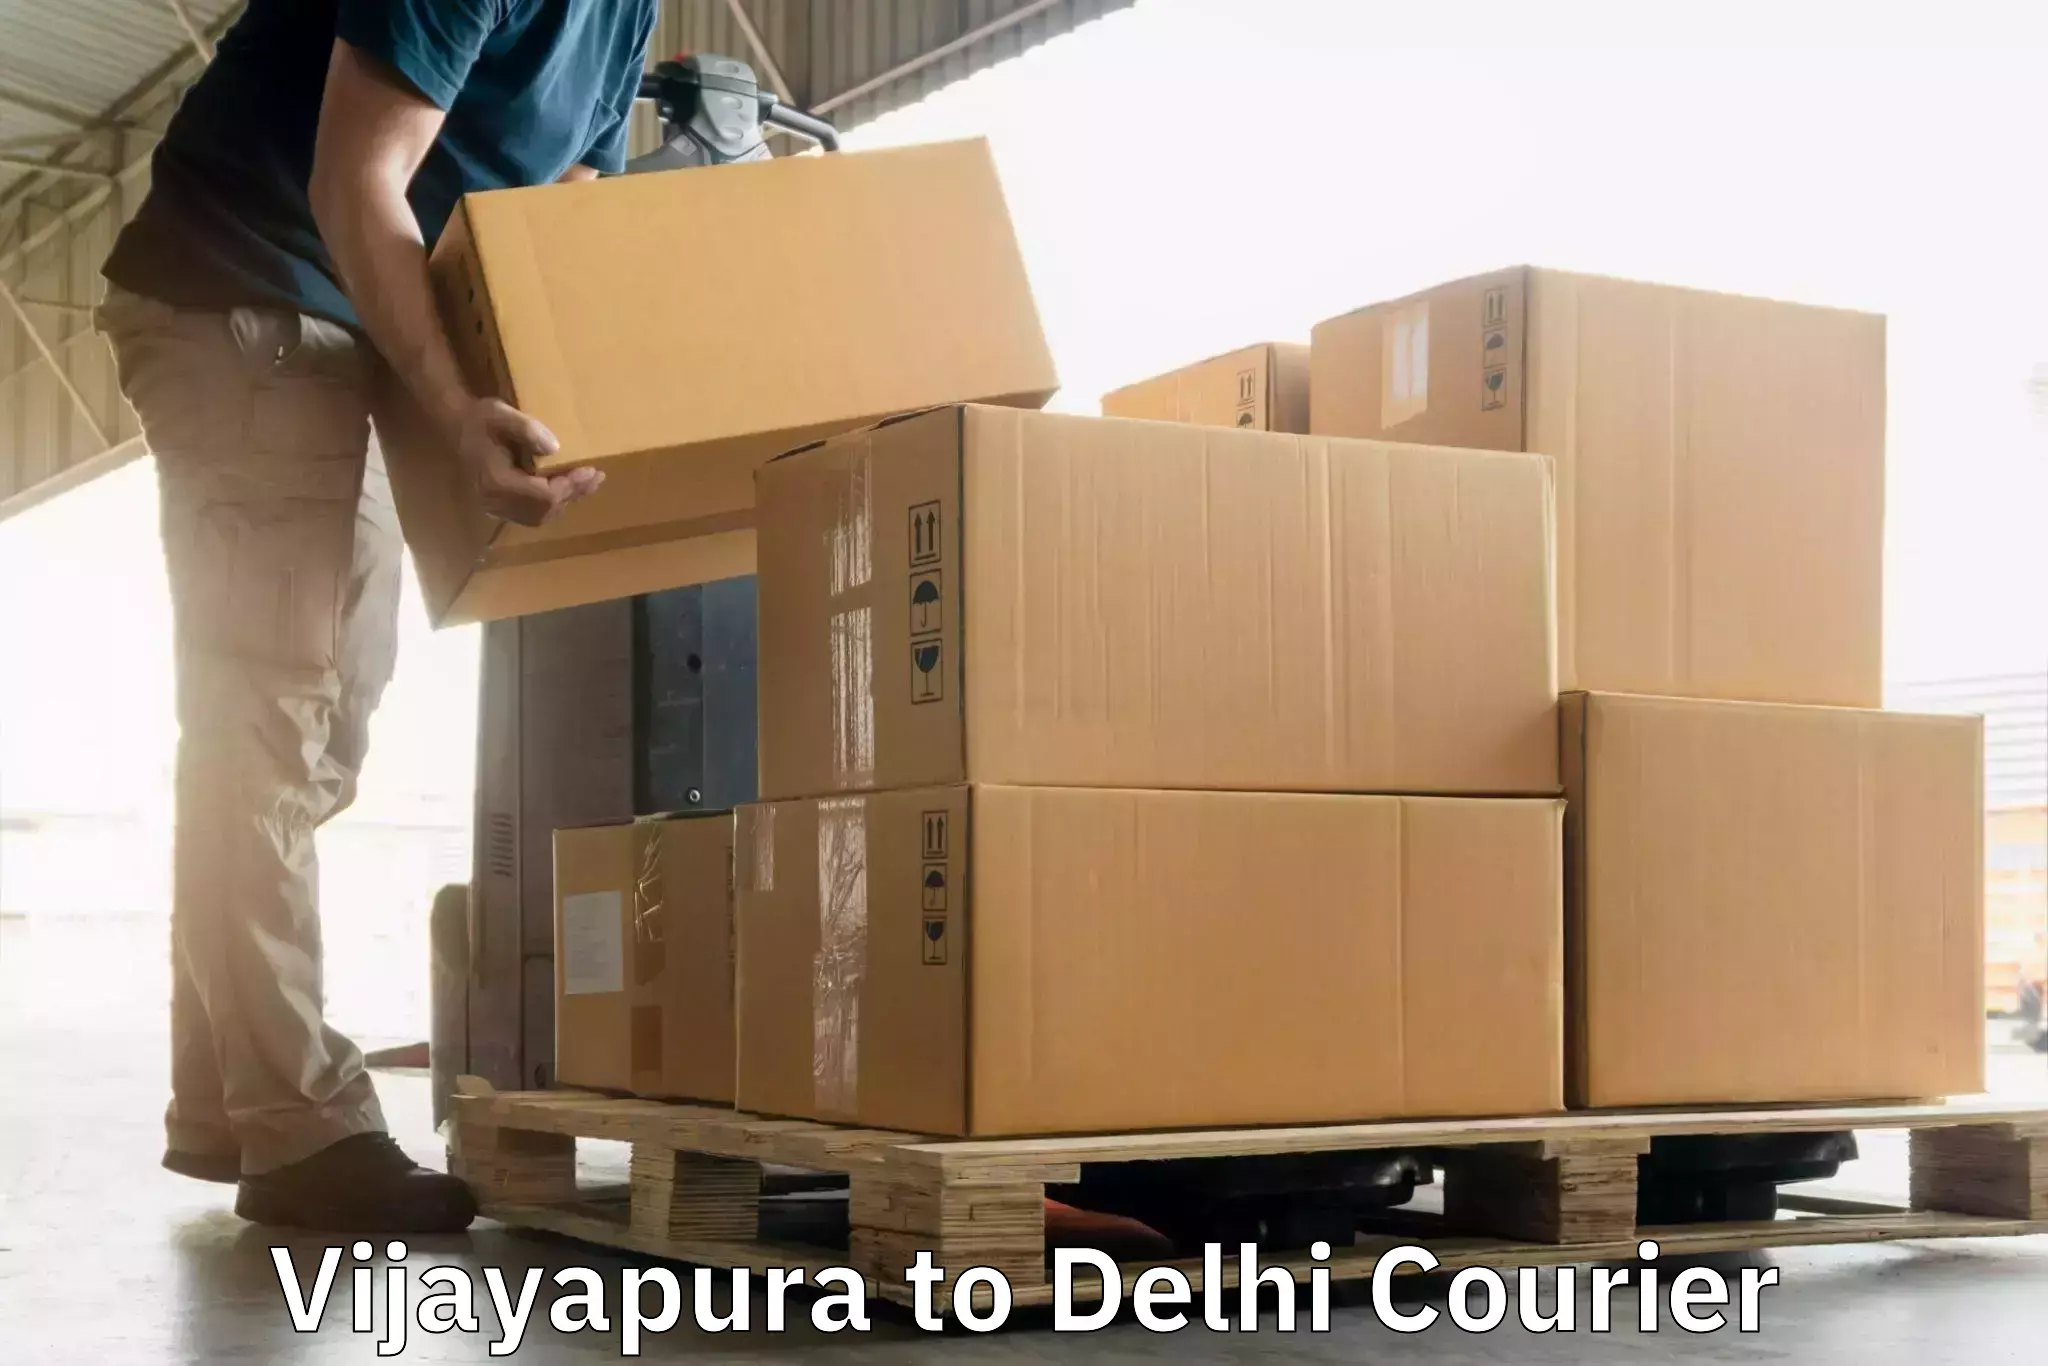 High-capacity parcel service Vijayapura to Subhash Nagar